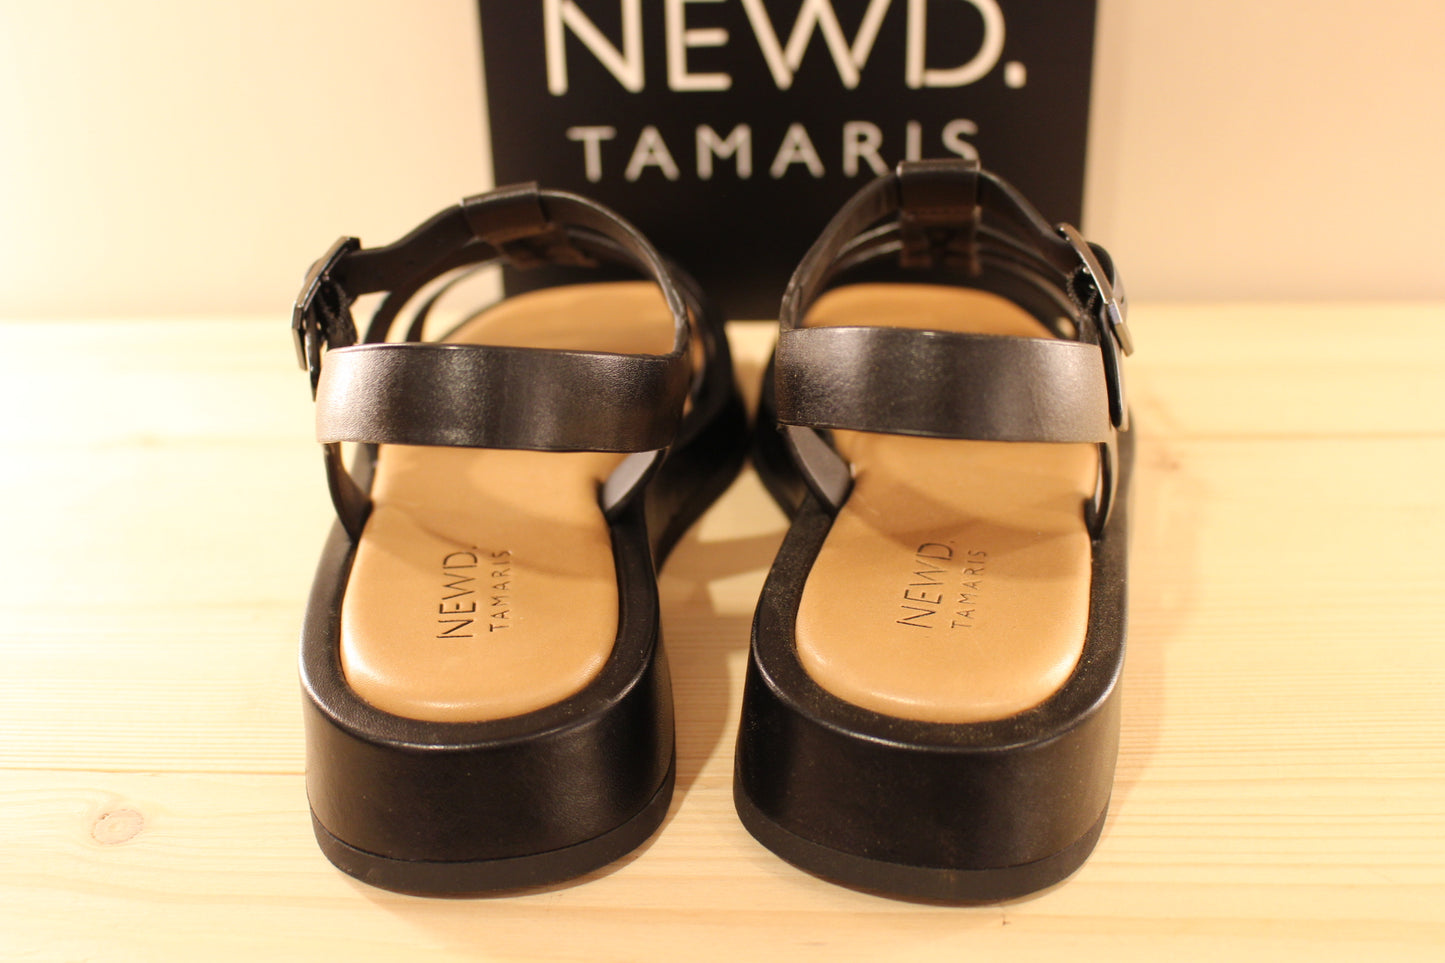 Sandale NEWD TAMARIS cuir noir fine bride semelle compensé